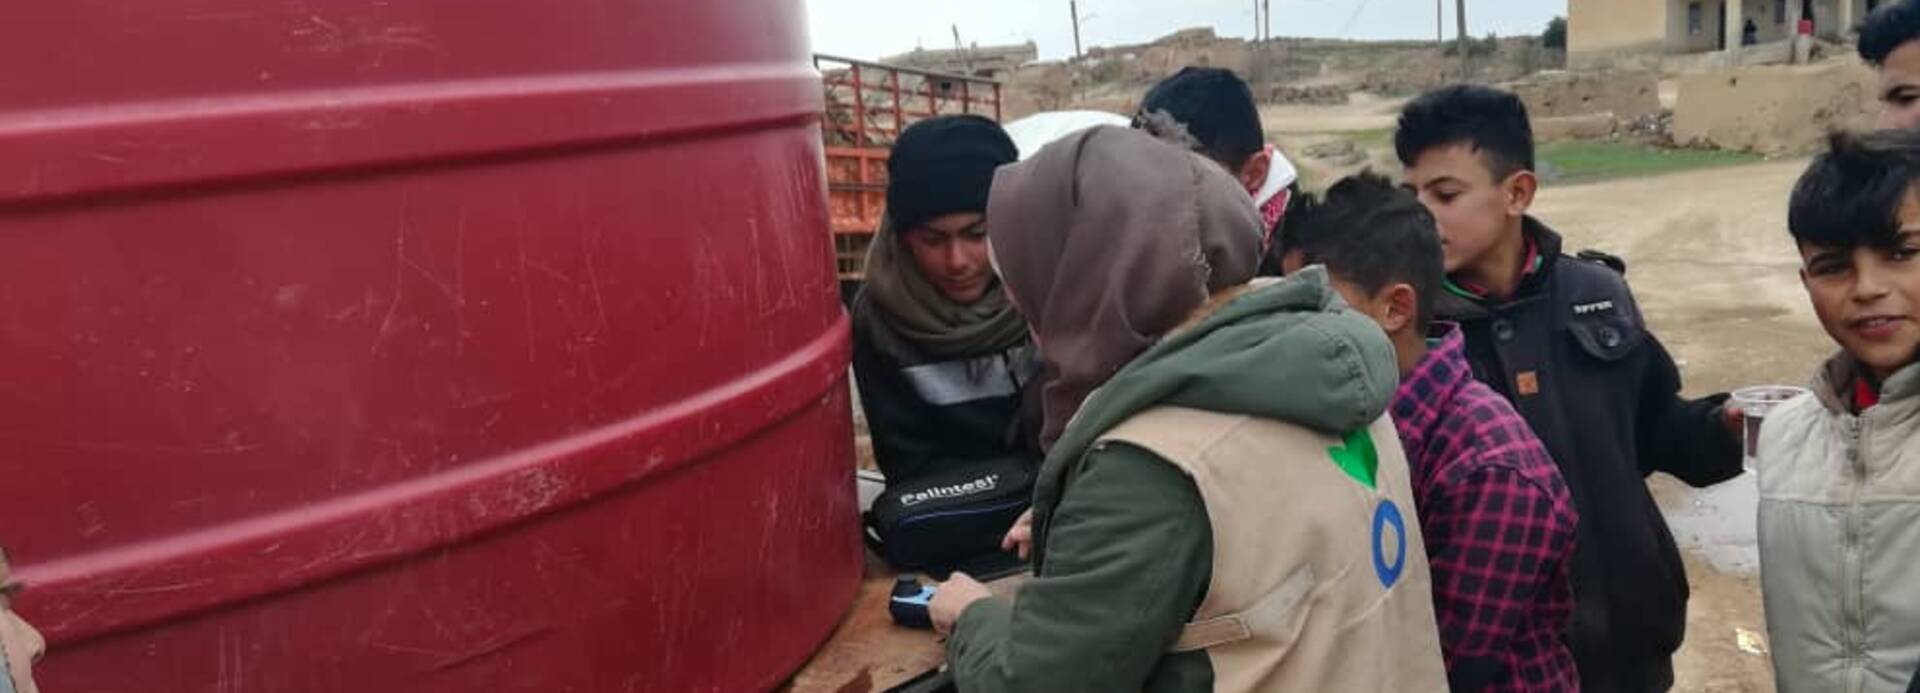 Aktion gegen den Hunger versorgt Menschen in Syrien mit sauberem Wasser aus dem Tank.